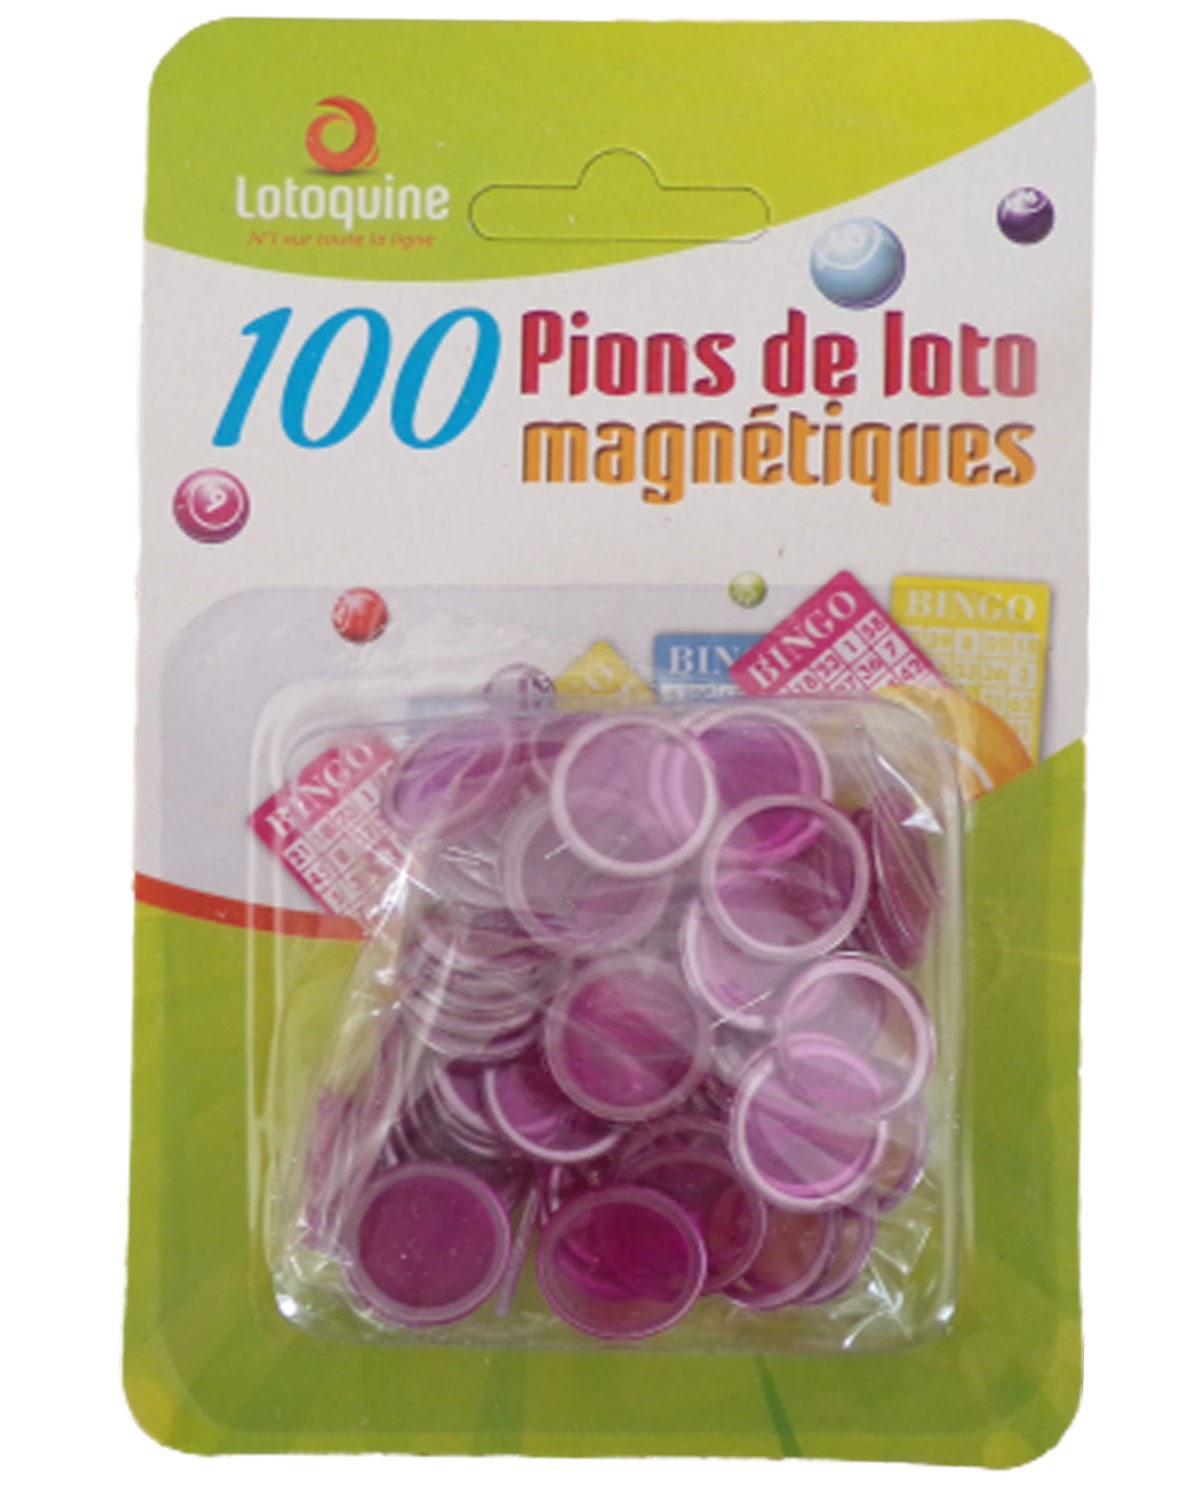 100 pions magnétiques pour loto